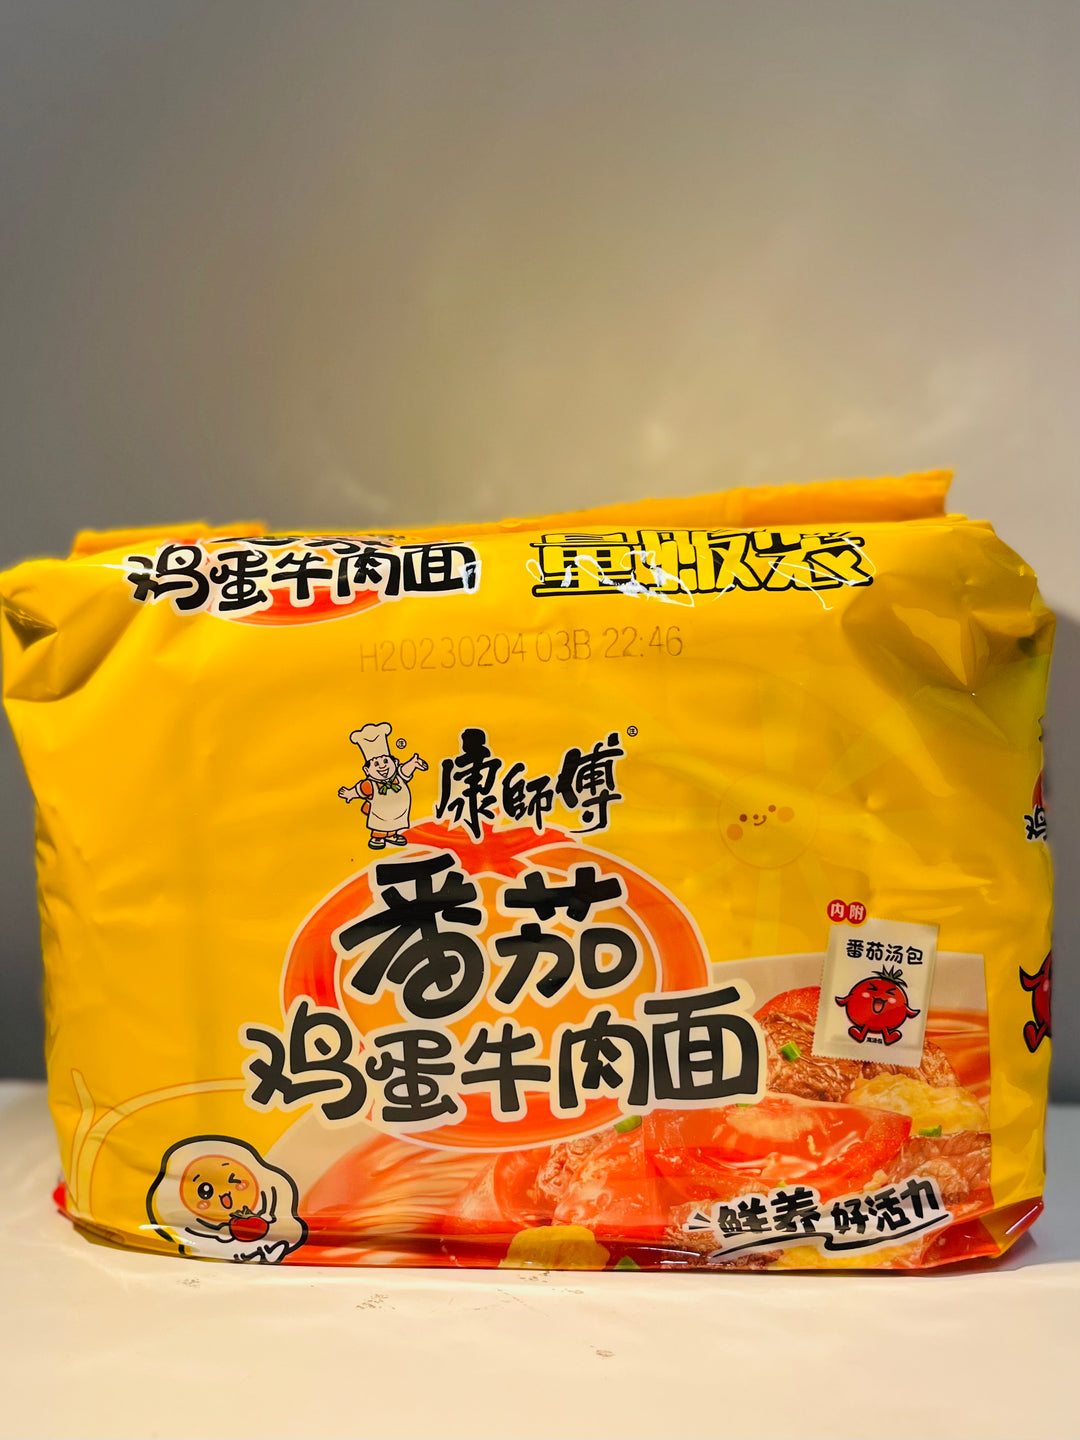 康师傅番茄鸡蛋牛肉面5pcks MK Beef with Tomato flavour Noodle